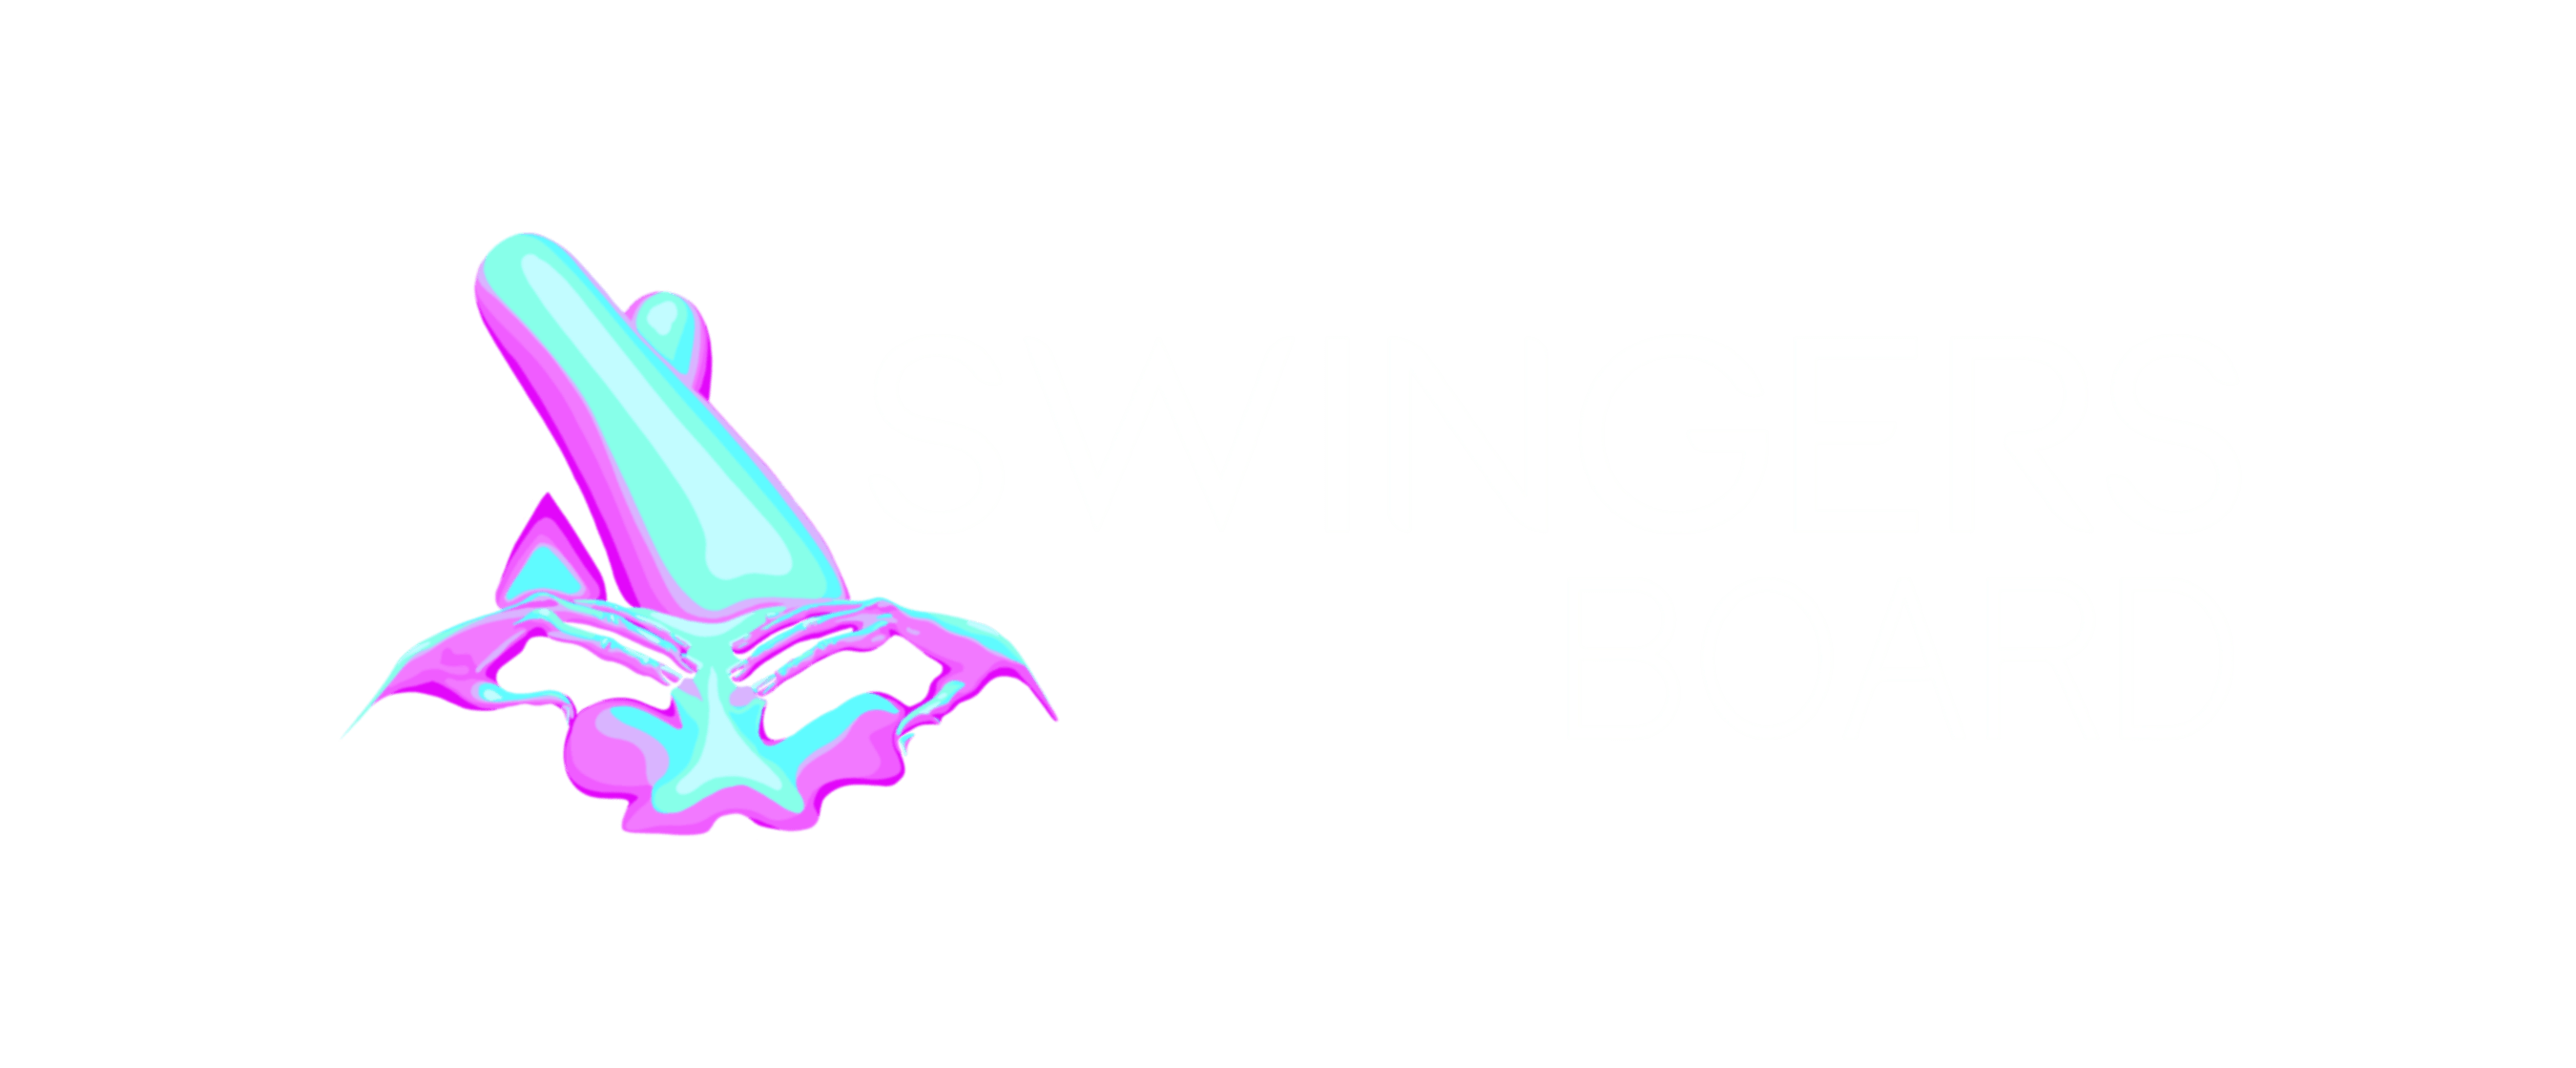 swinger chat board sls